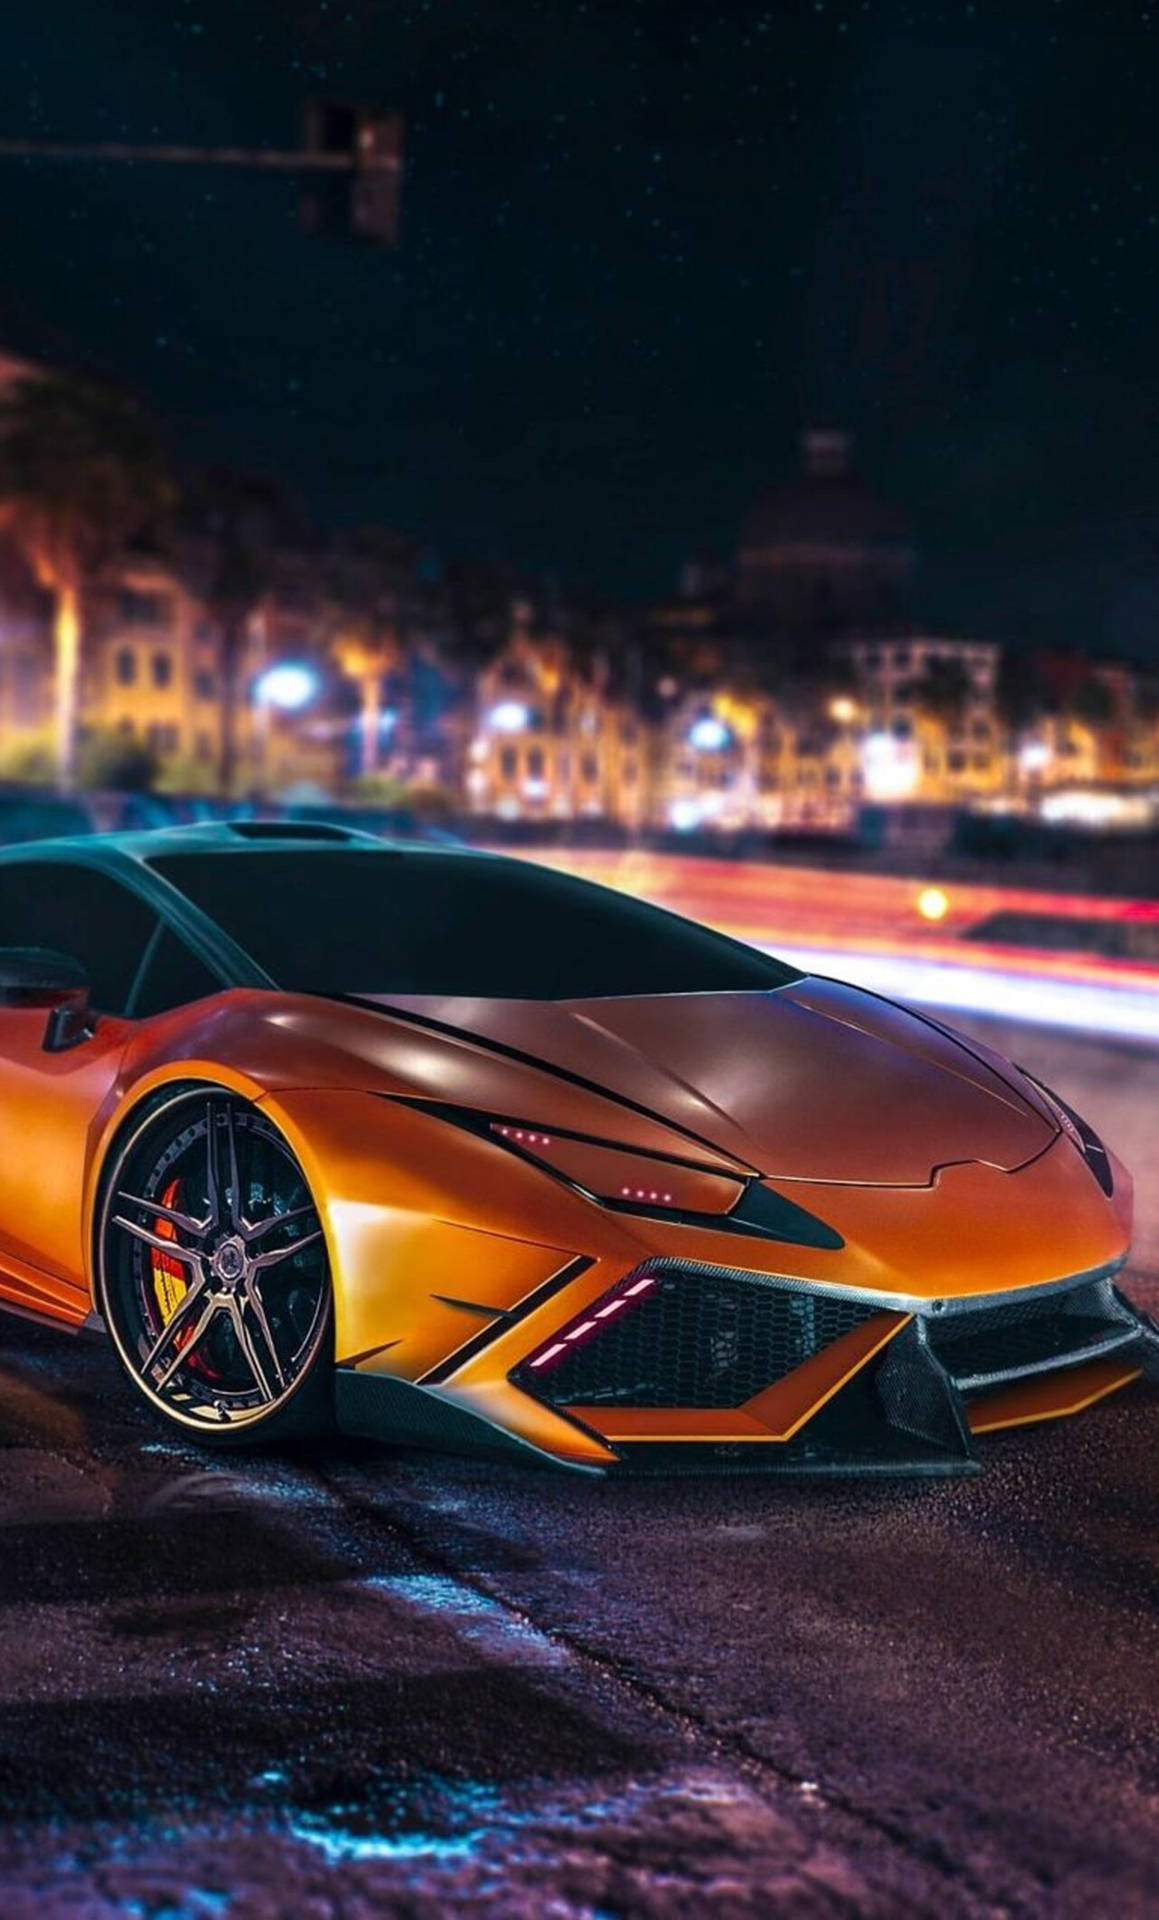 Höj Nivån På Ditt Iphone-spel Med Denna 4k Lamborghini-tema Bakgrundsbild. Wallpaper